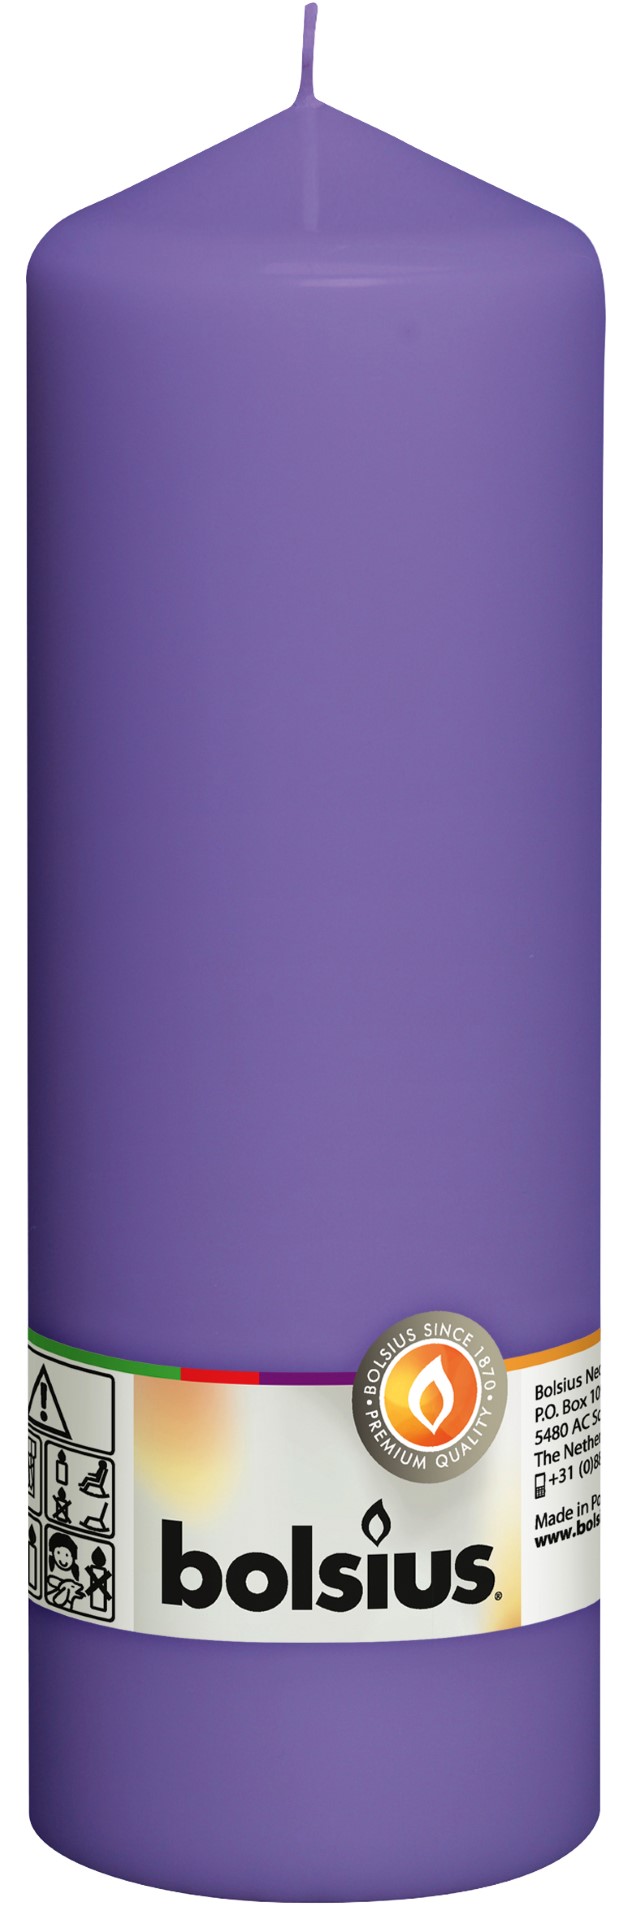 Stompkaars 200/68 Ultra violet